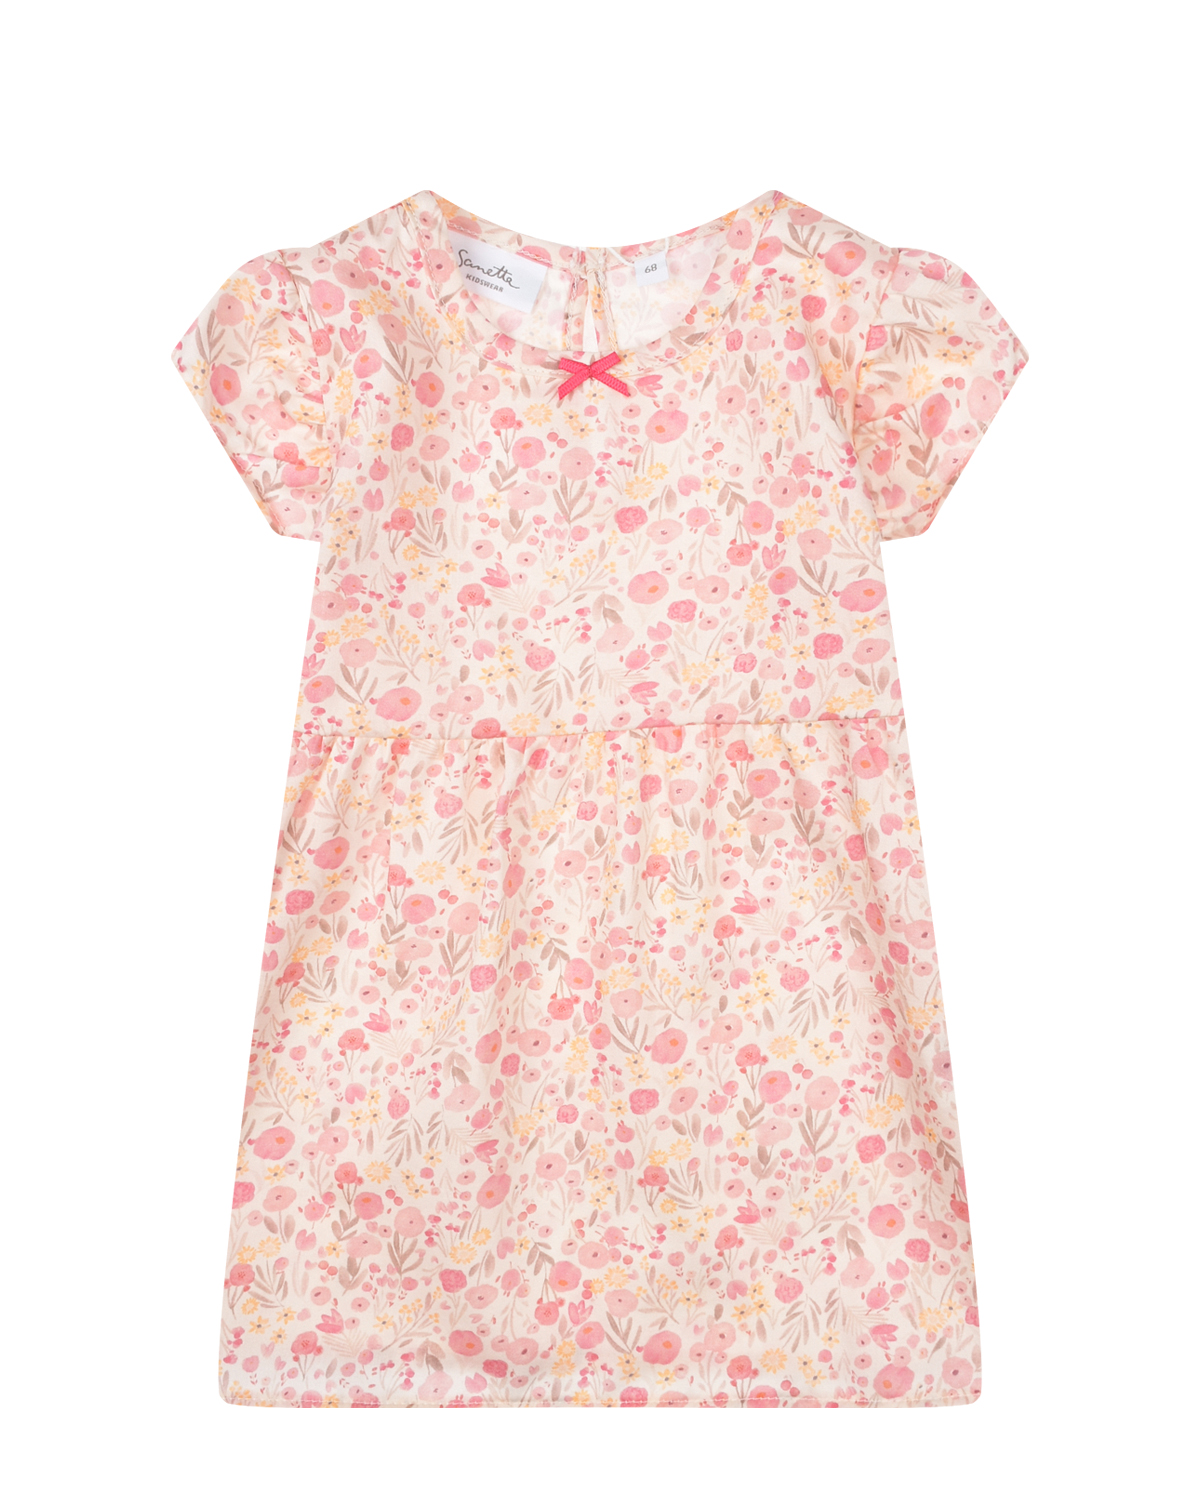 Розовое платье с цветочным принтом Sanetta Kidswear платье для собак кулирка l дс 32 ош 38 42 ог 44 48 розовое с серыми полосками